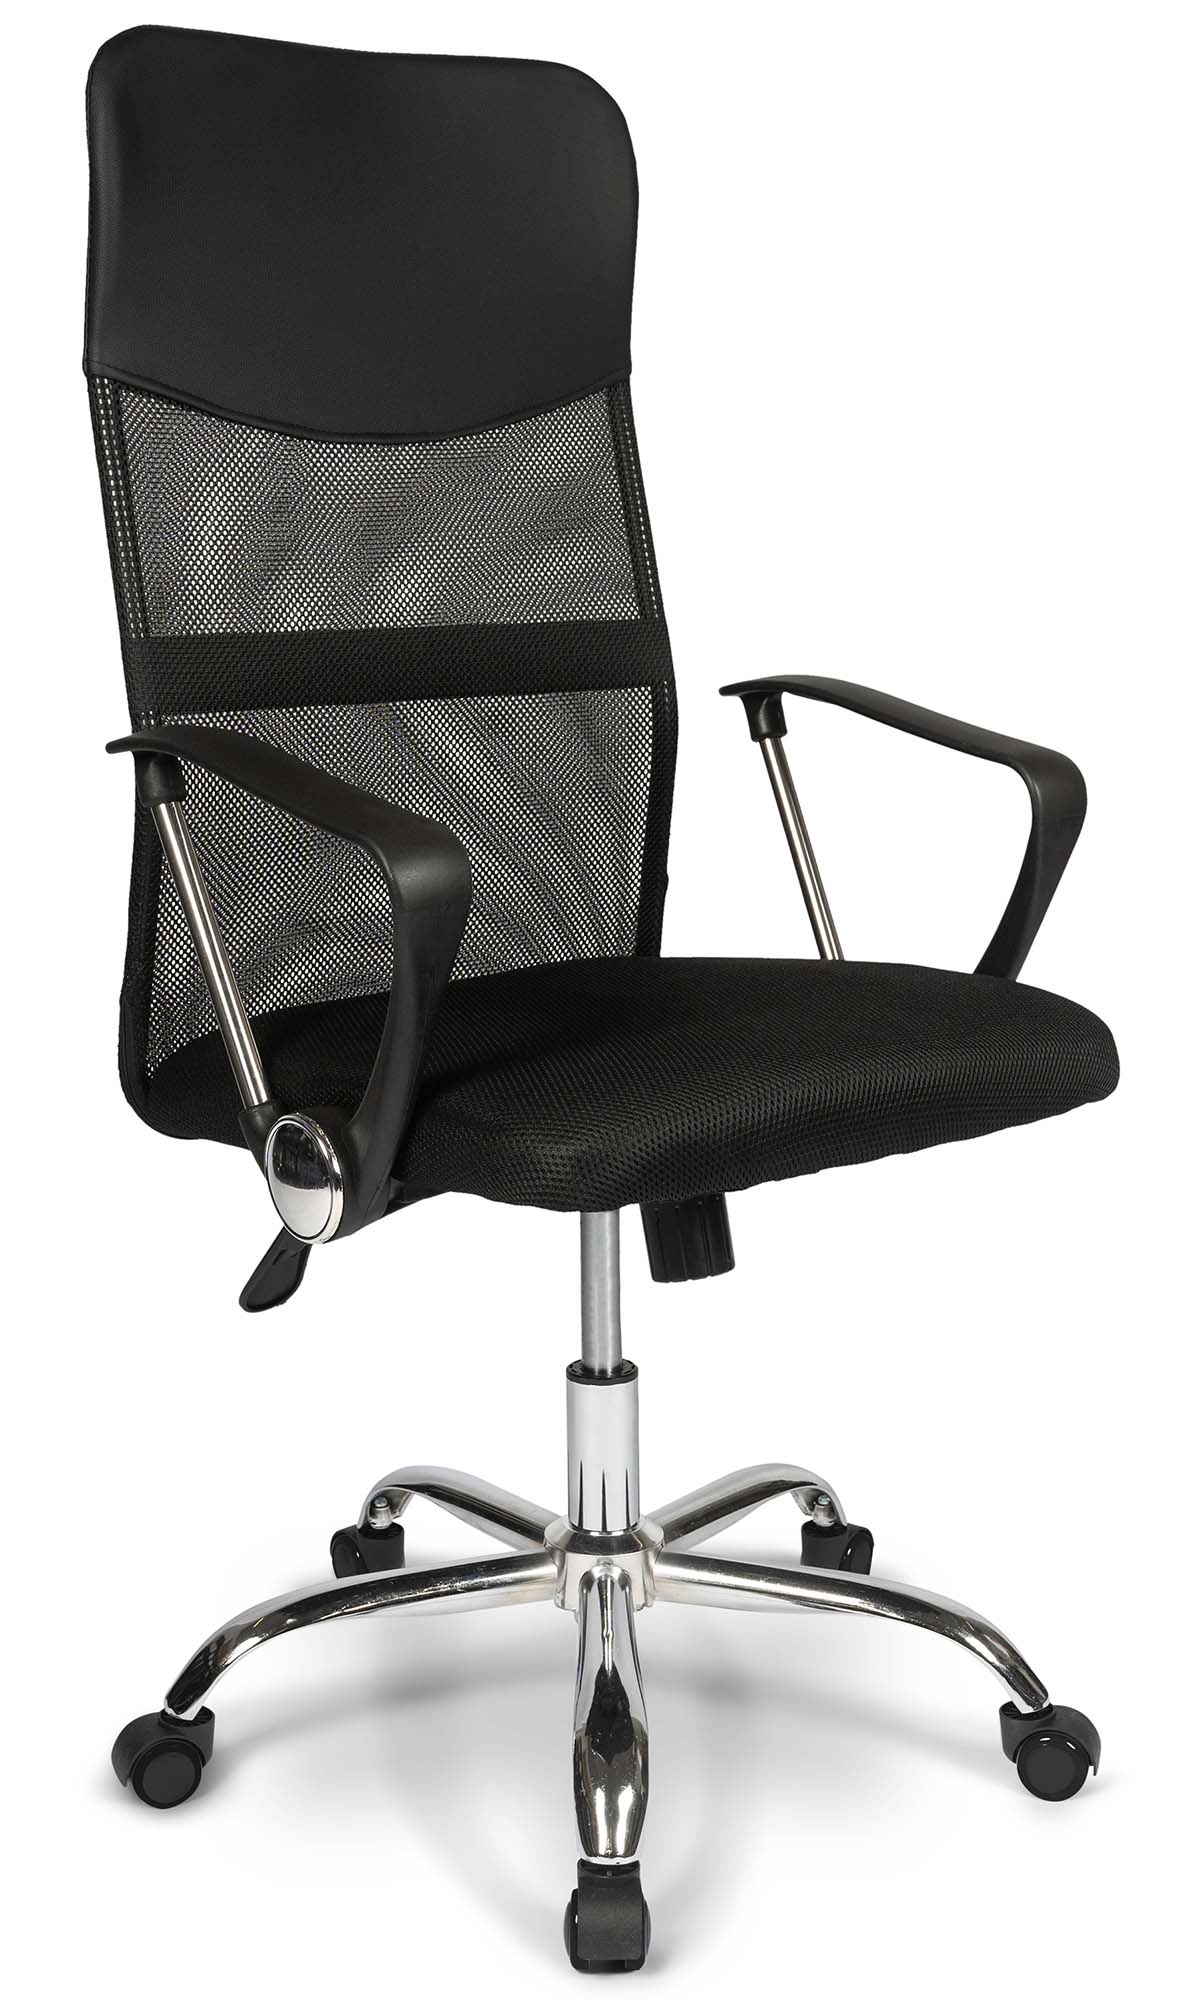 Ergodu Ergonomic Mesh Office Chair for sale